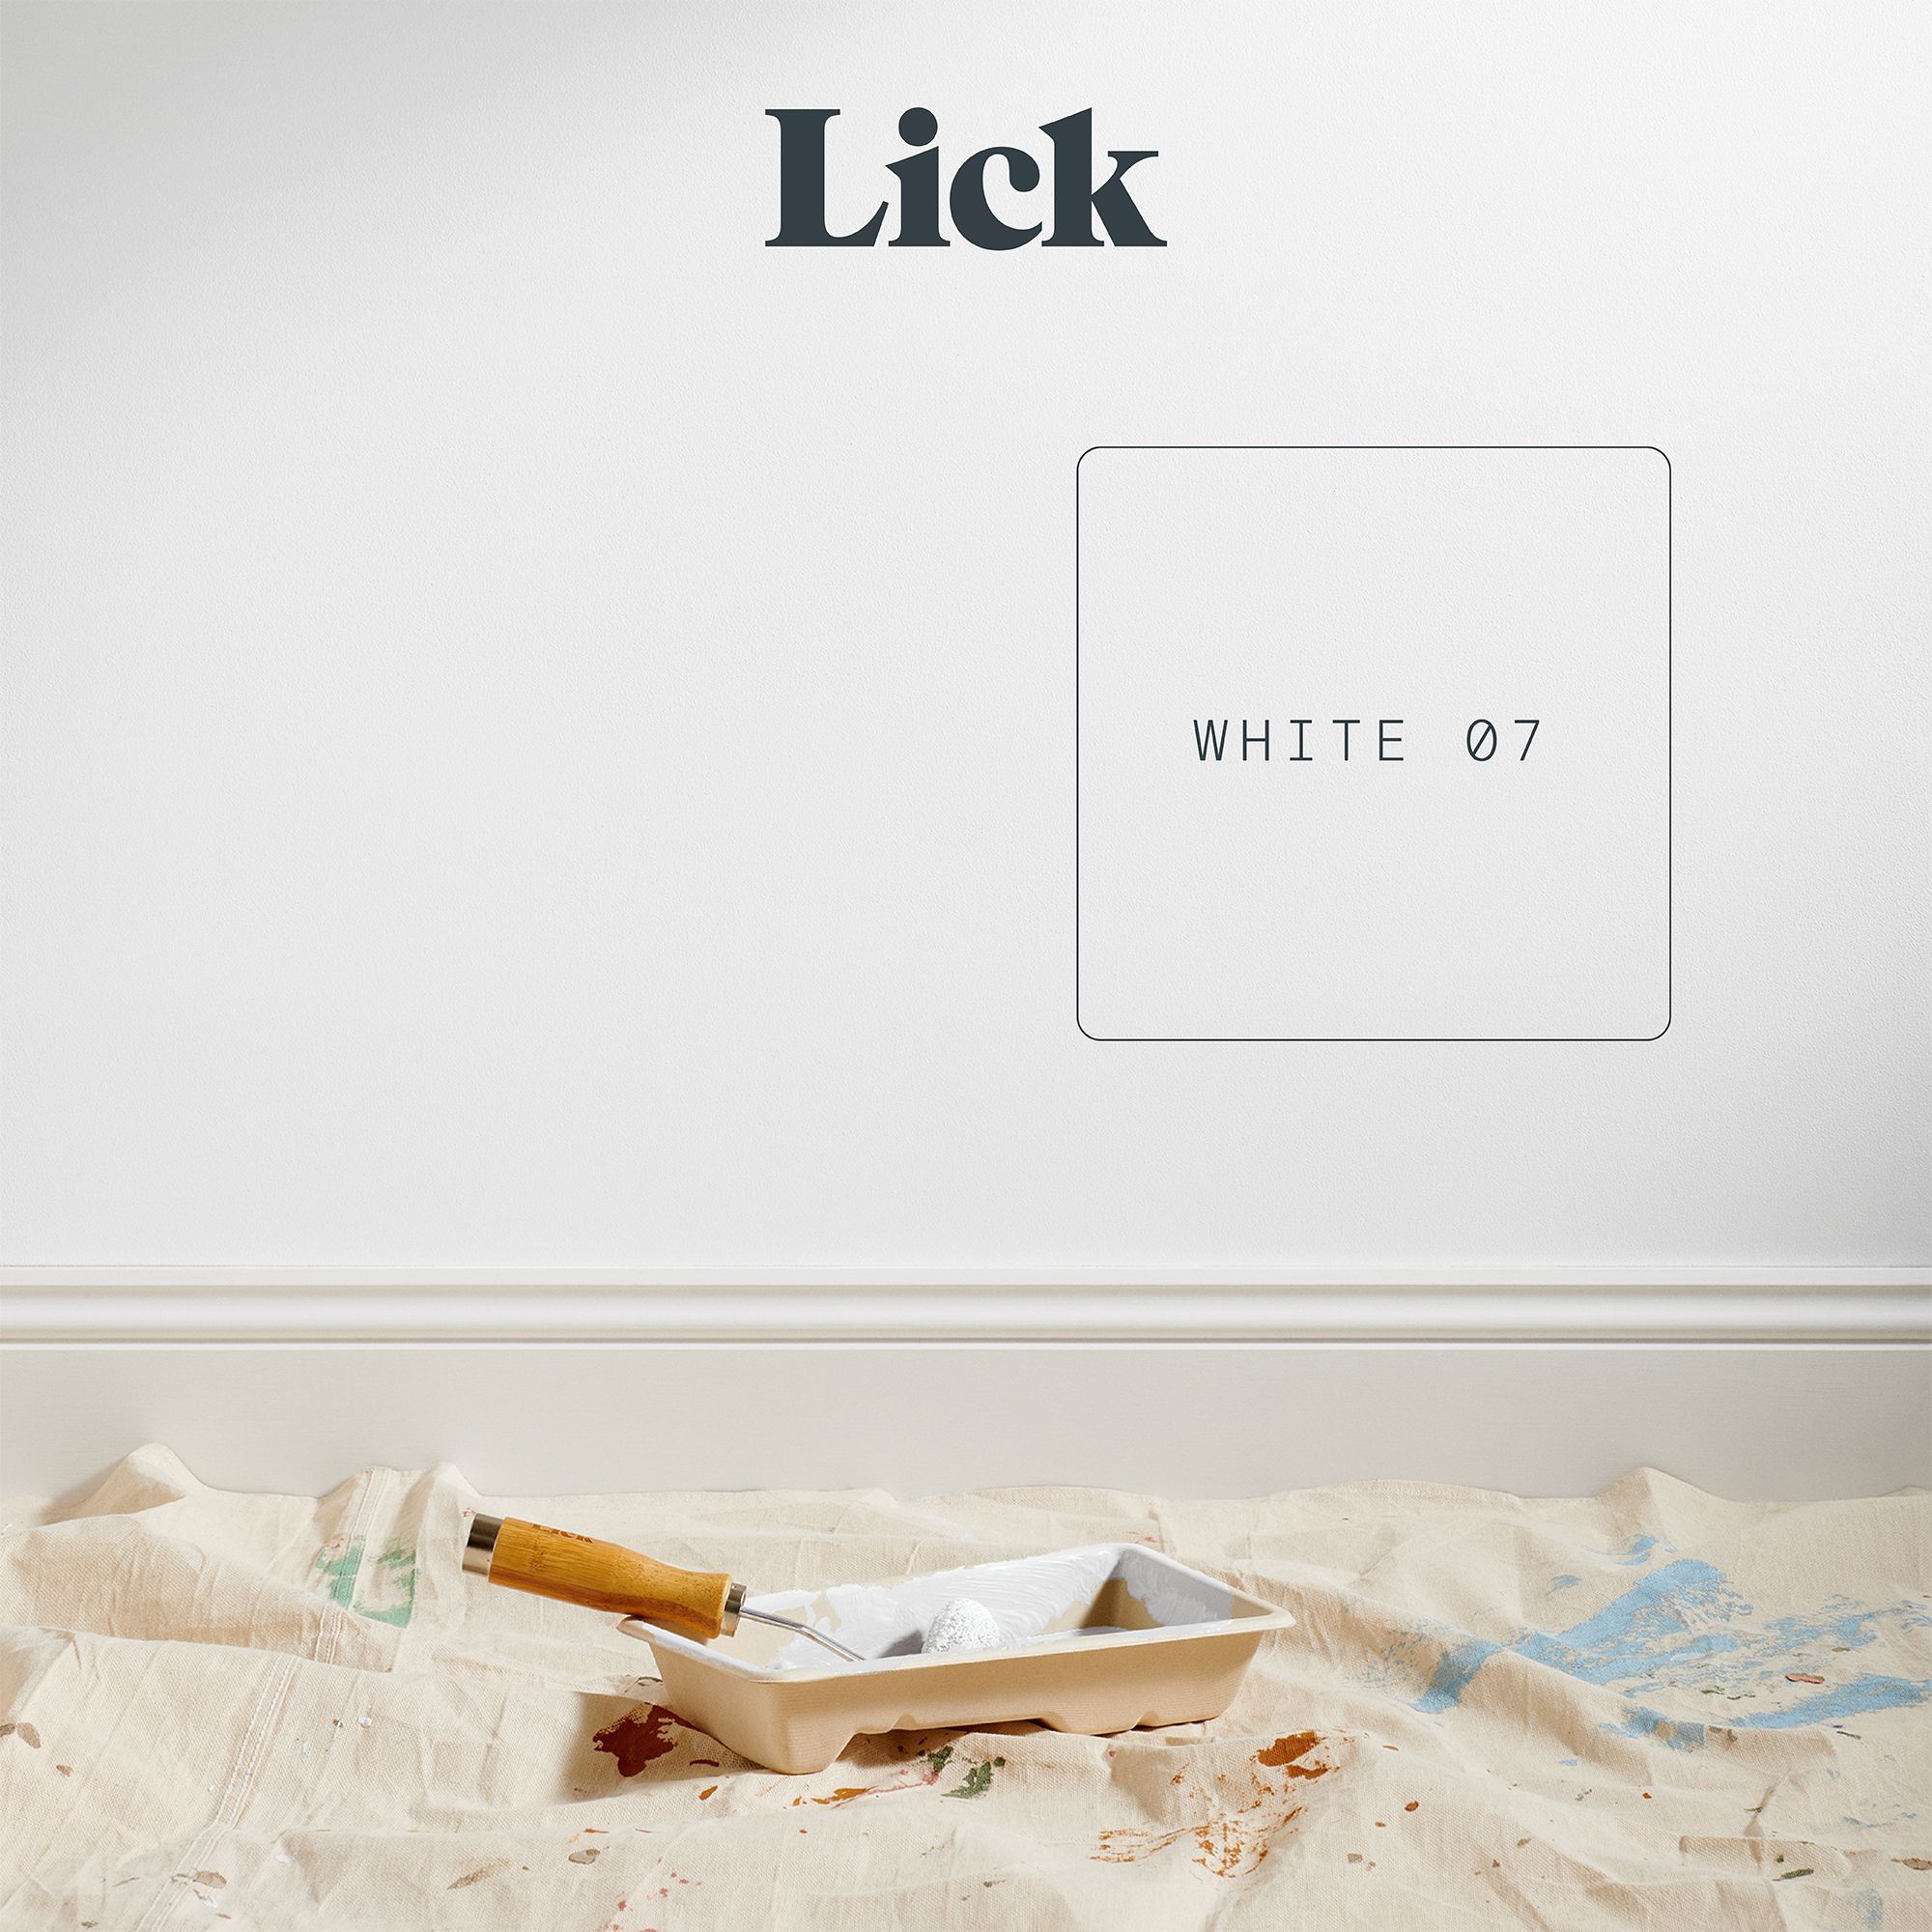 Lick White 07 Matt Emulsion paint, 2.5L